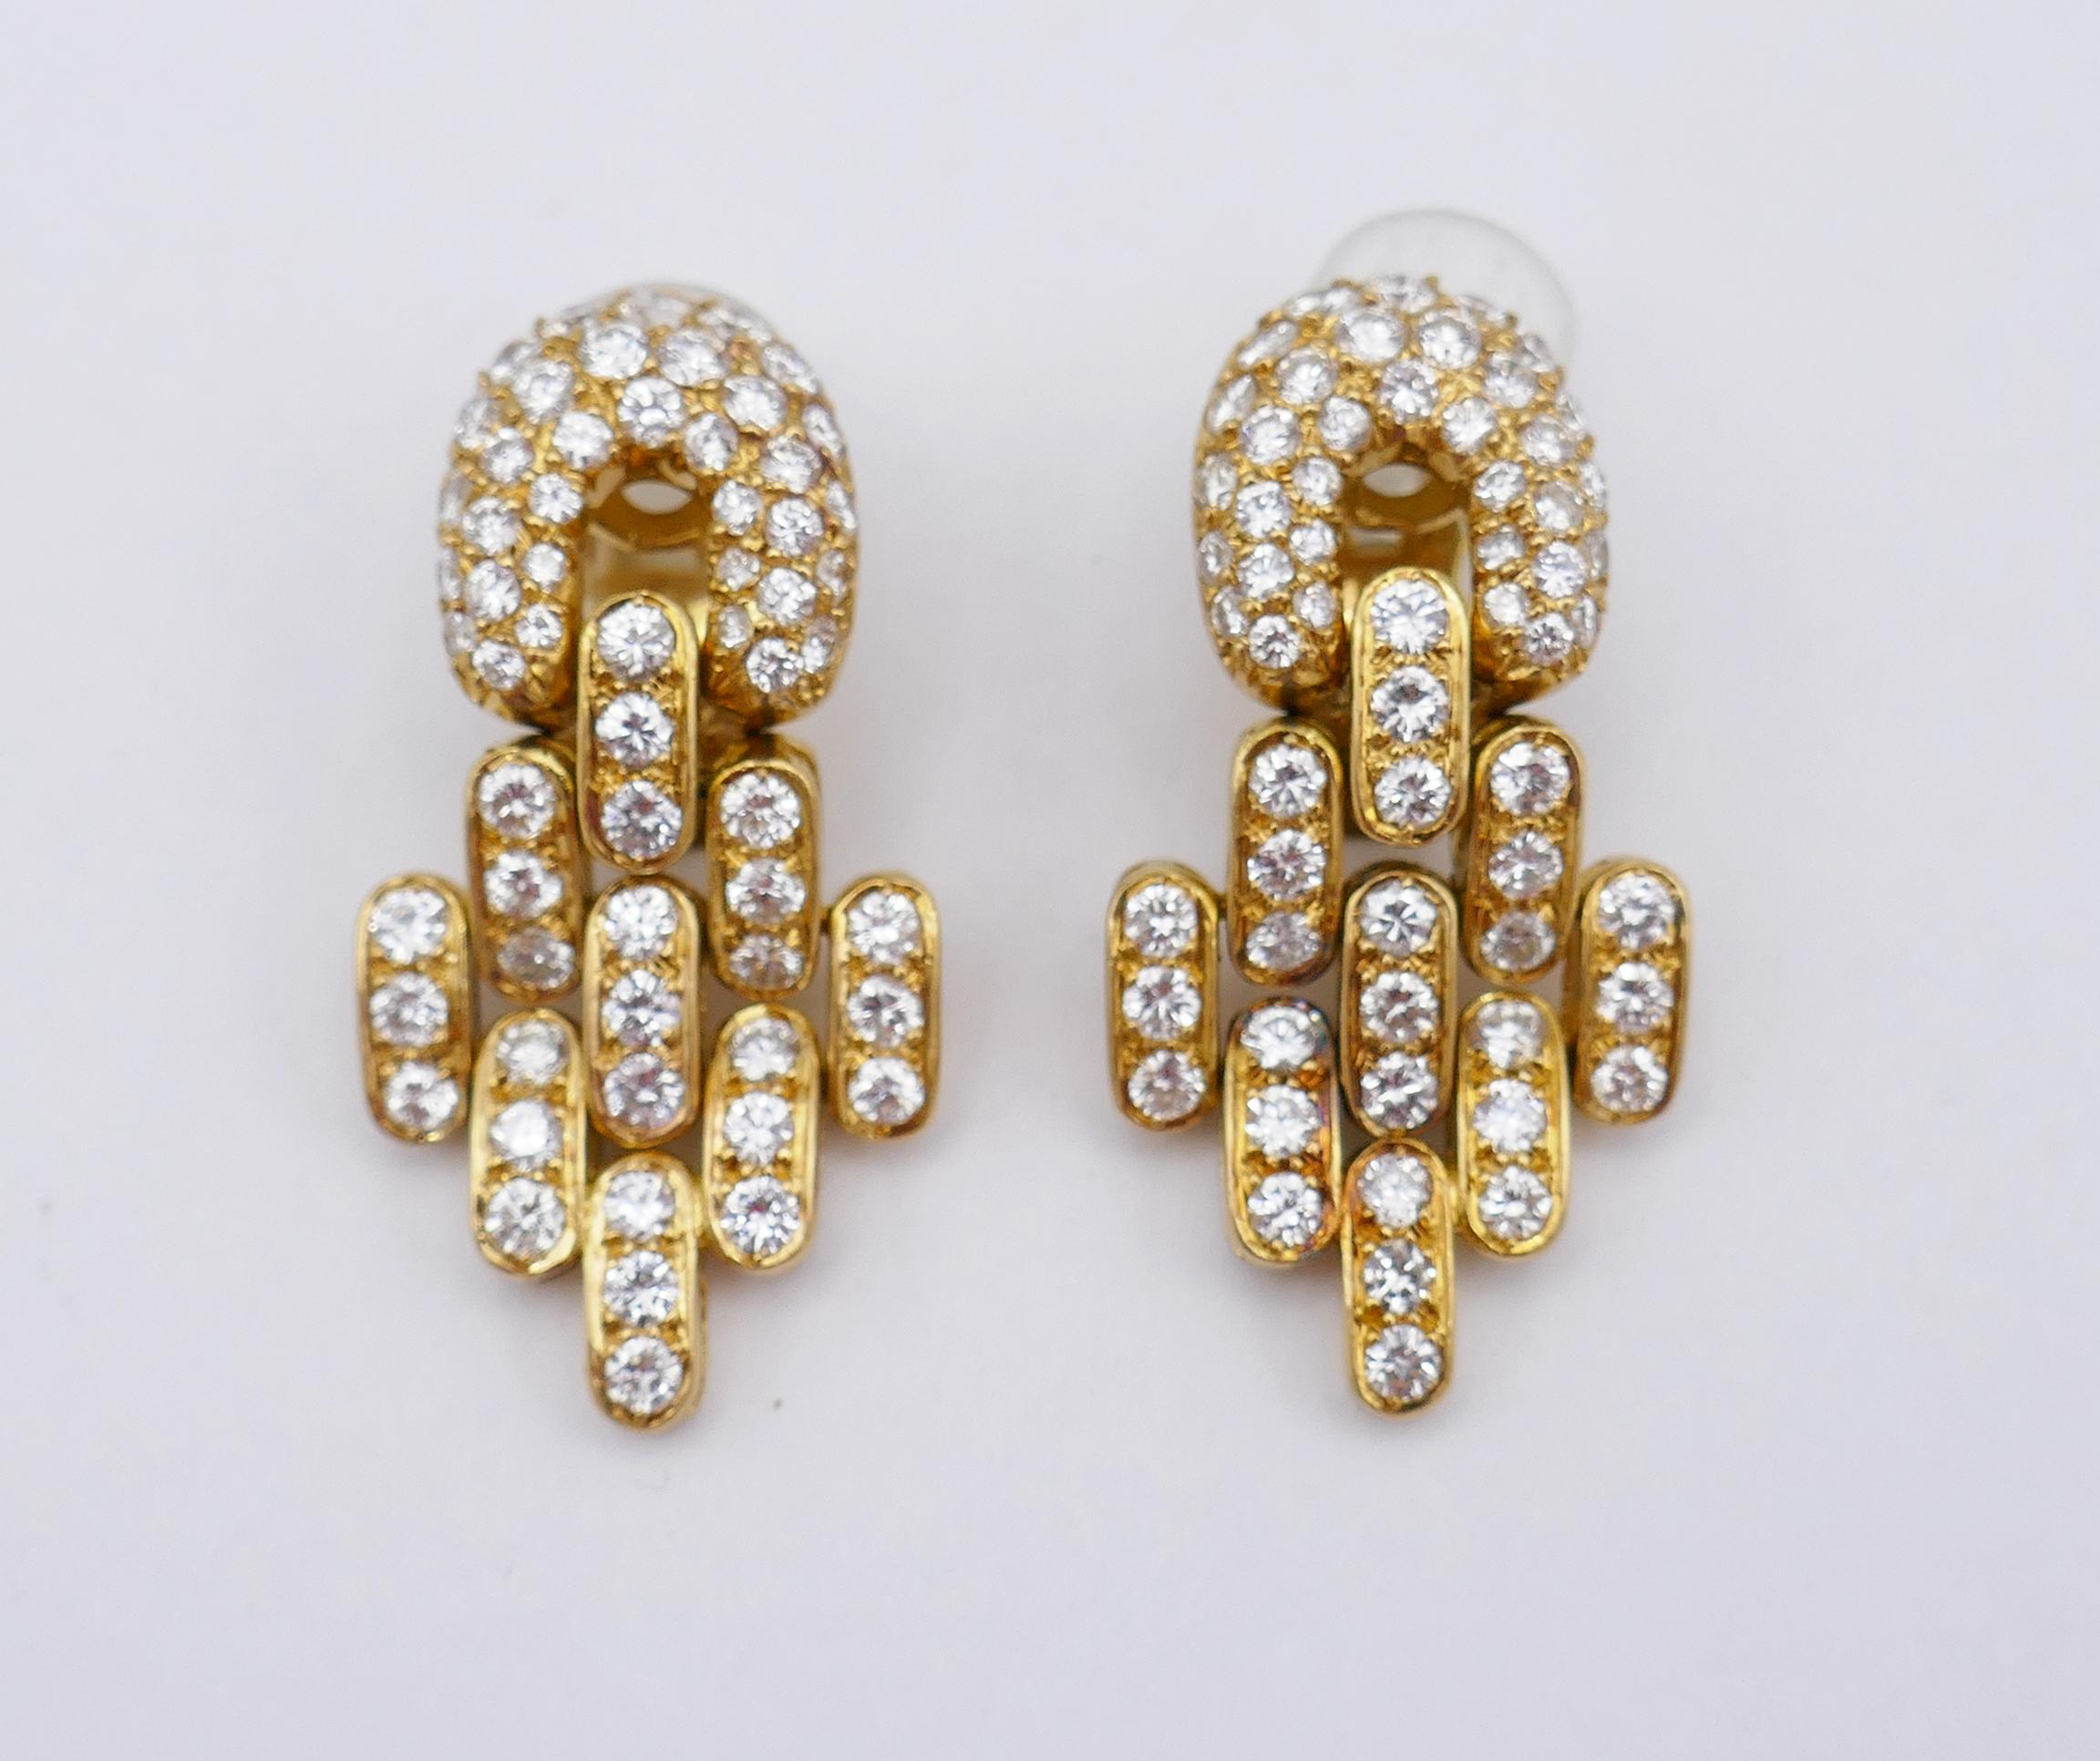 	Ein wunderschönes Paar Vintage-Ohrringe von Boucheron aus 18 Karat Gelbgold, Diamanten und schwarzem Onyx.
	Diese Vintage-Ohrringe von Boucheron bestehen aus einer ovalen schwarzen Onyxscheibe und einem baumelnden Teil aus Gold und Diamanten. Die